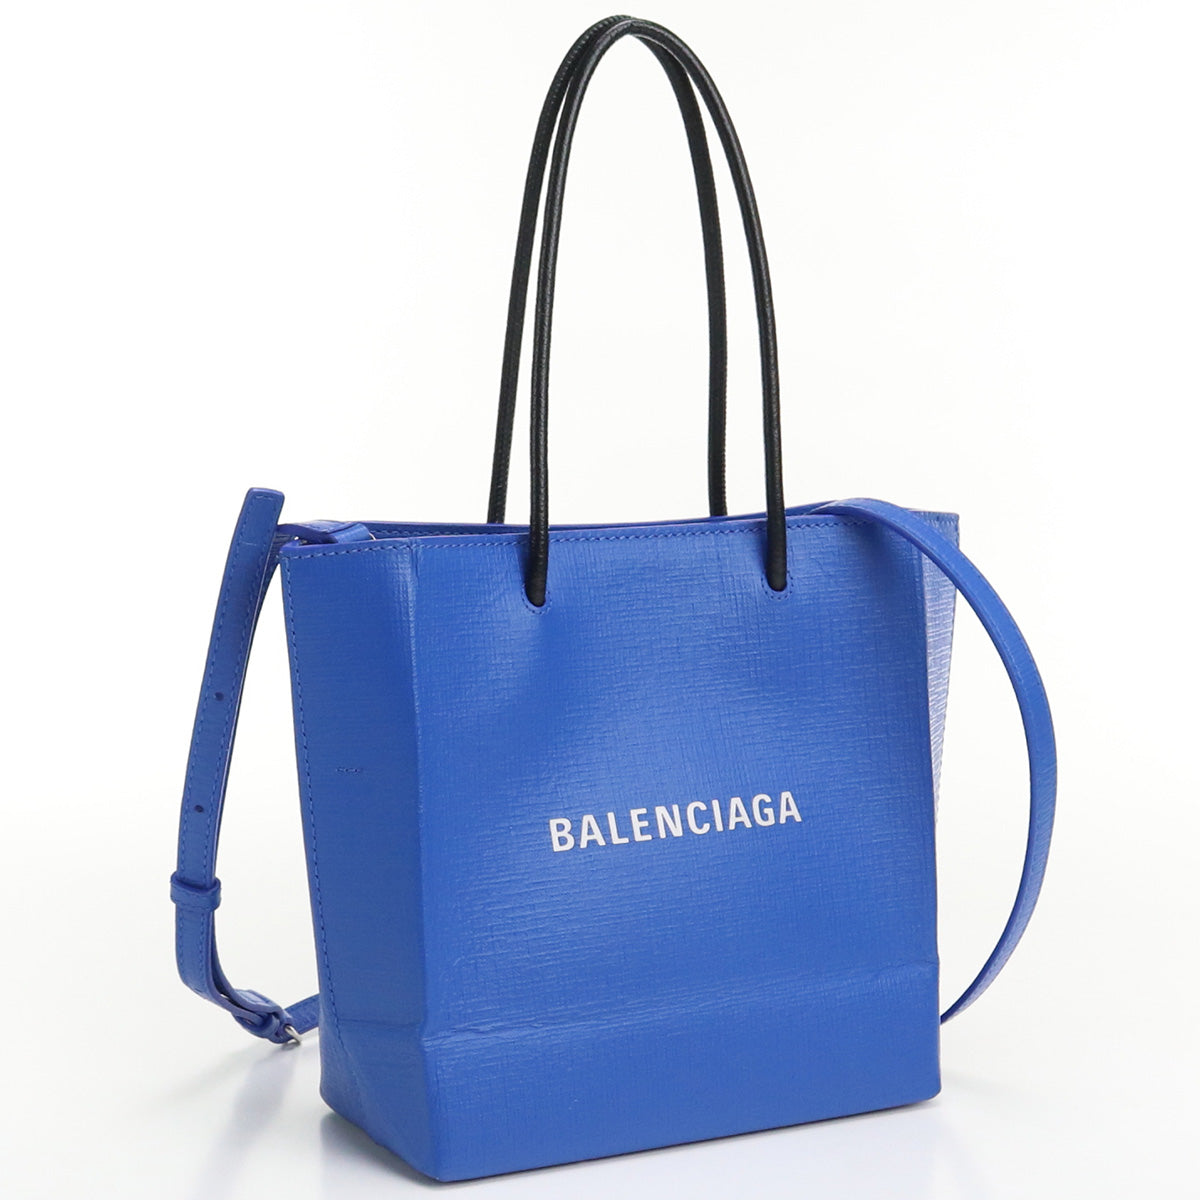 BALENCIAGA Shopping tote XXS 597858 Tote Bag leather unisex